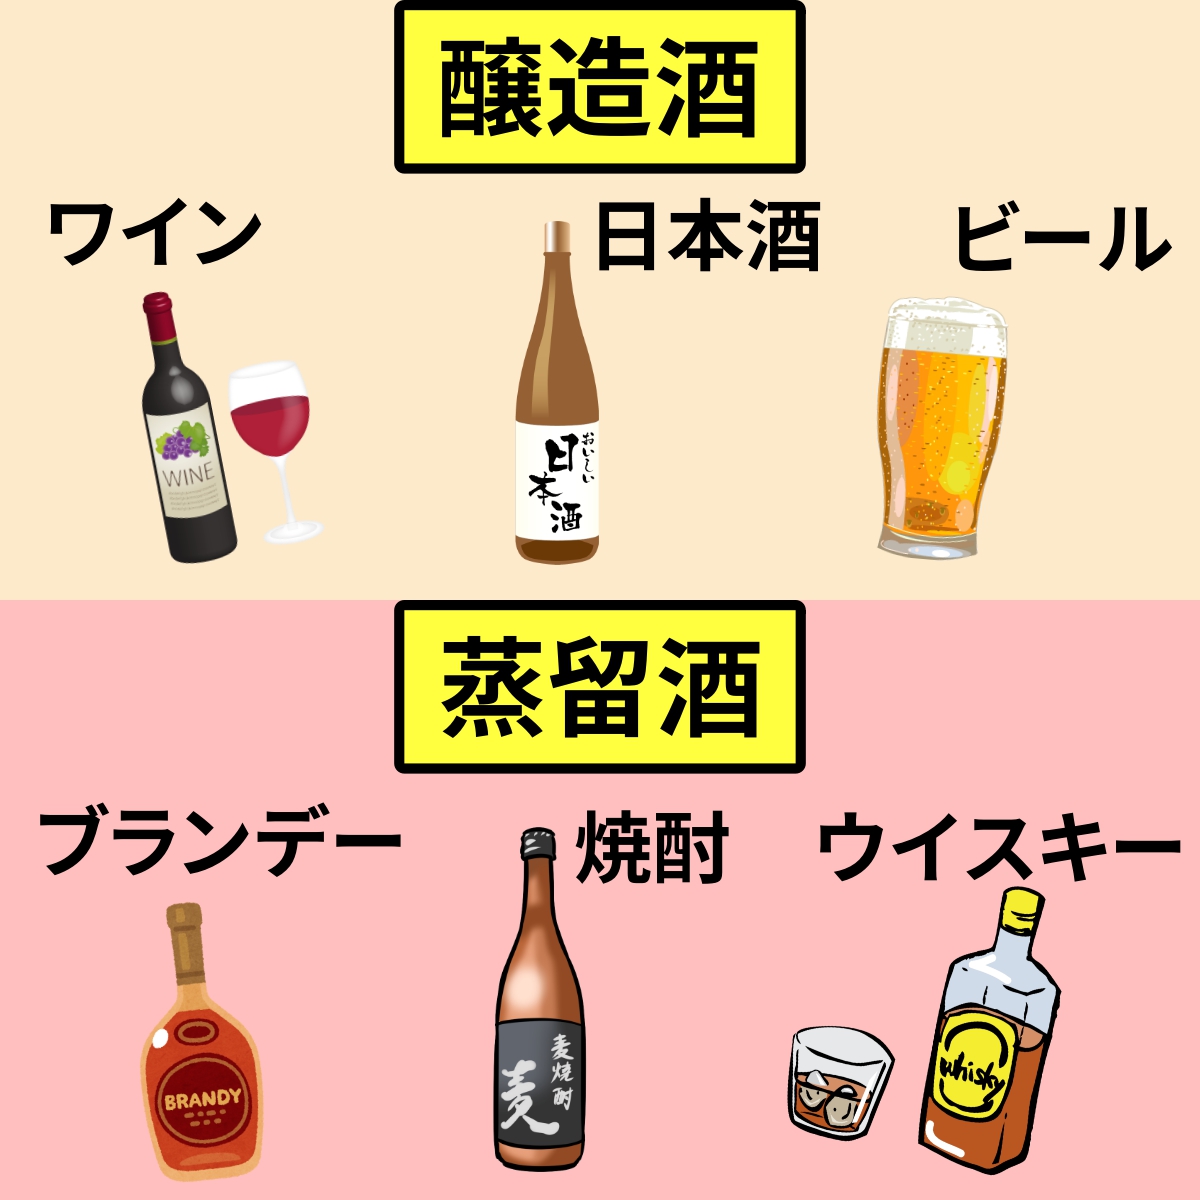 日本酒とは わかりやすく解説 焼酎との違い Webon ウェボン